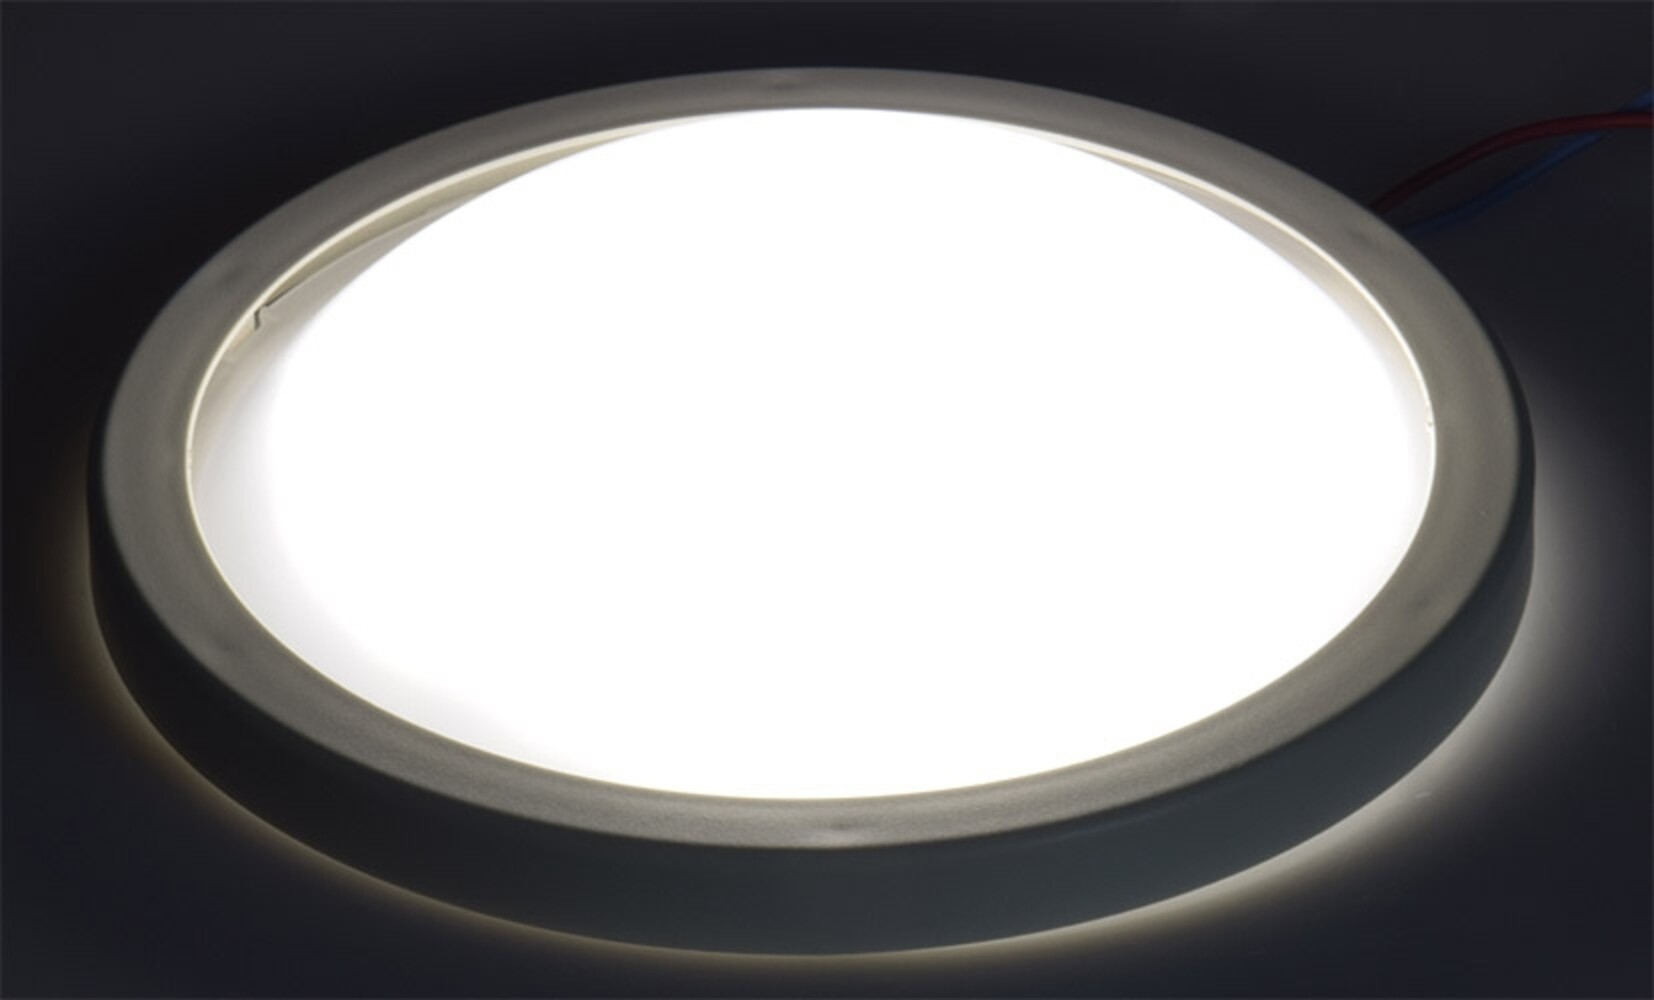 Hochwertiges LED Modul von ChiliTec mit hoher Leuchtkraft und warmweißer Lichtfarbe